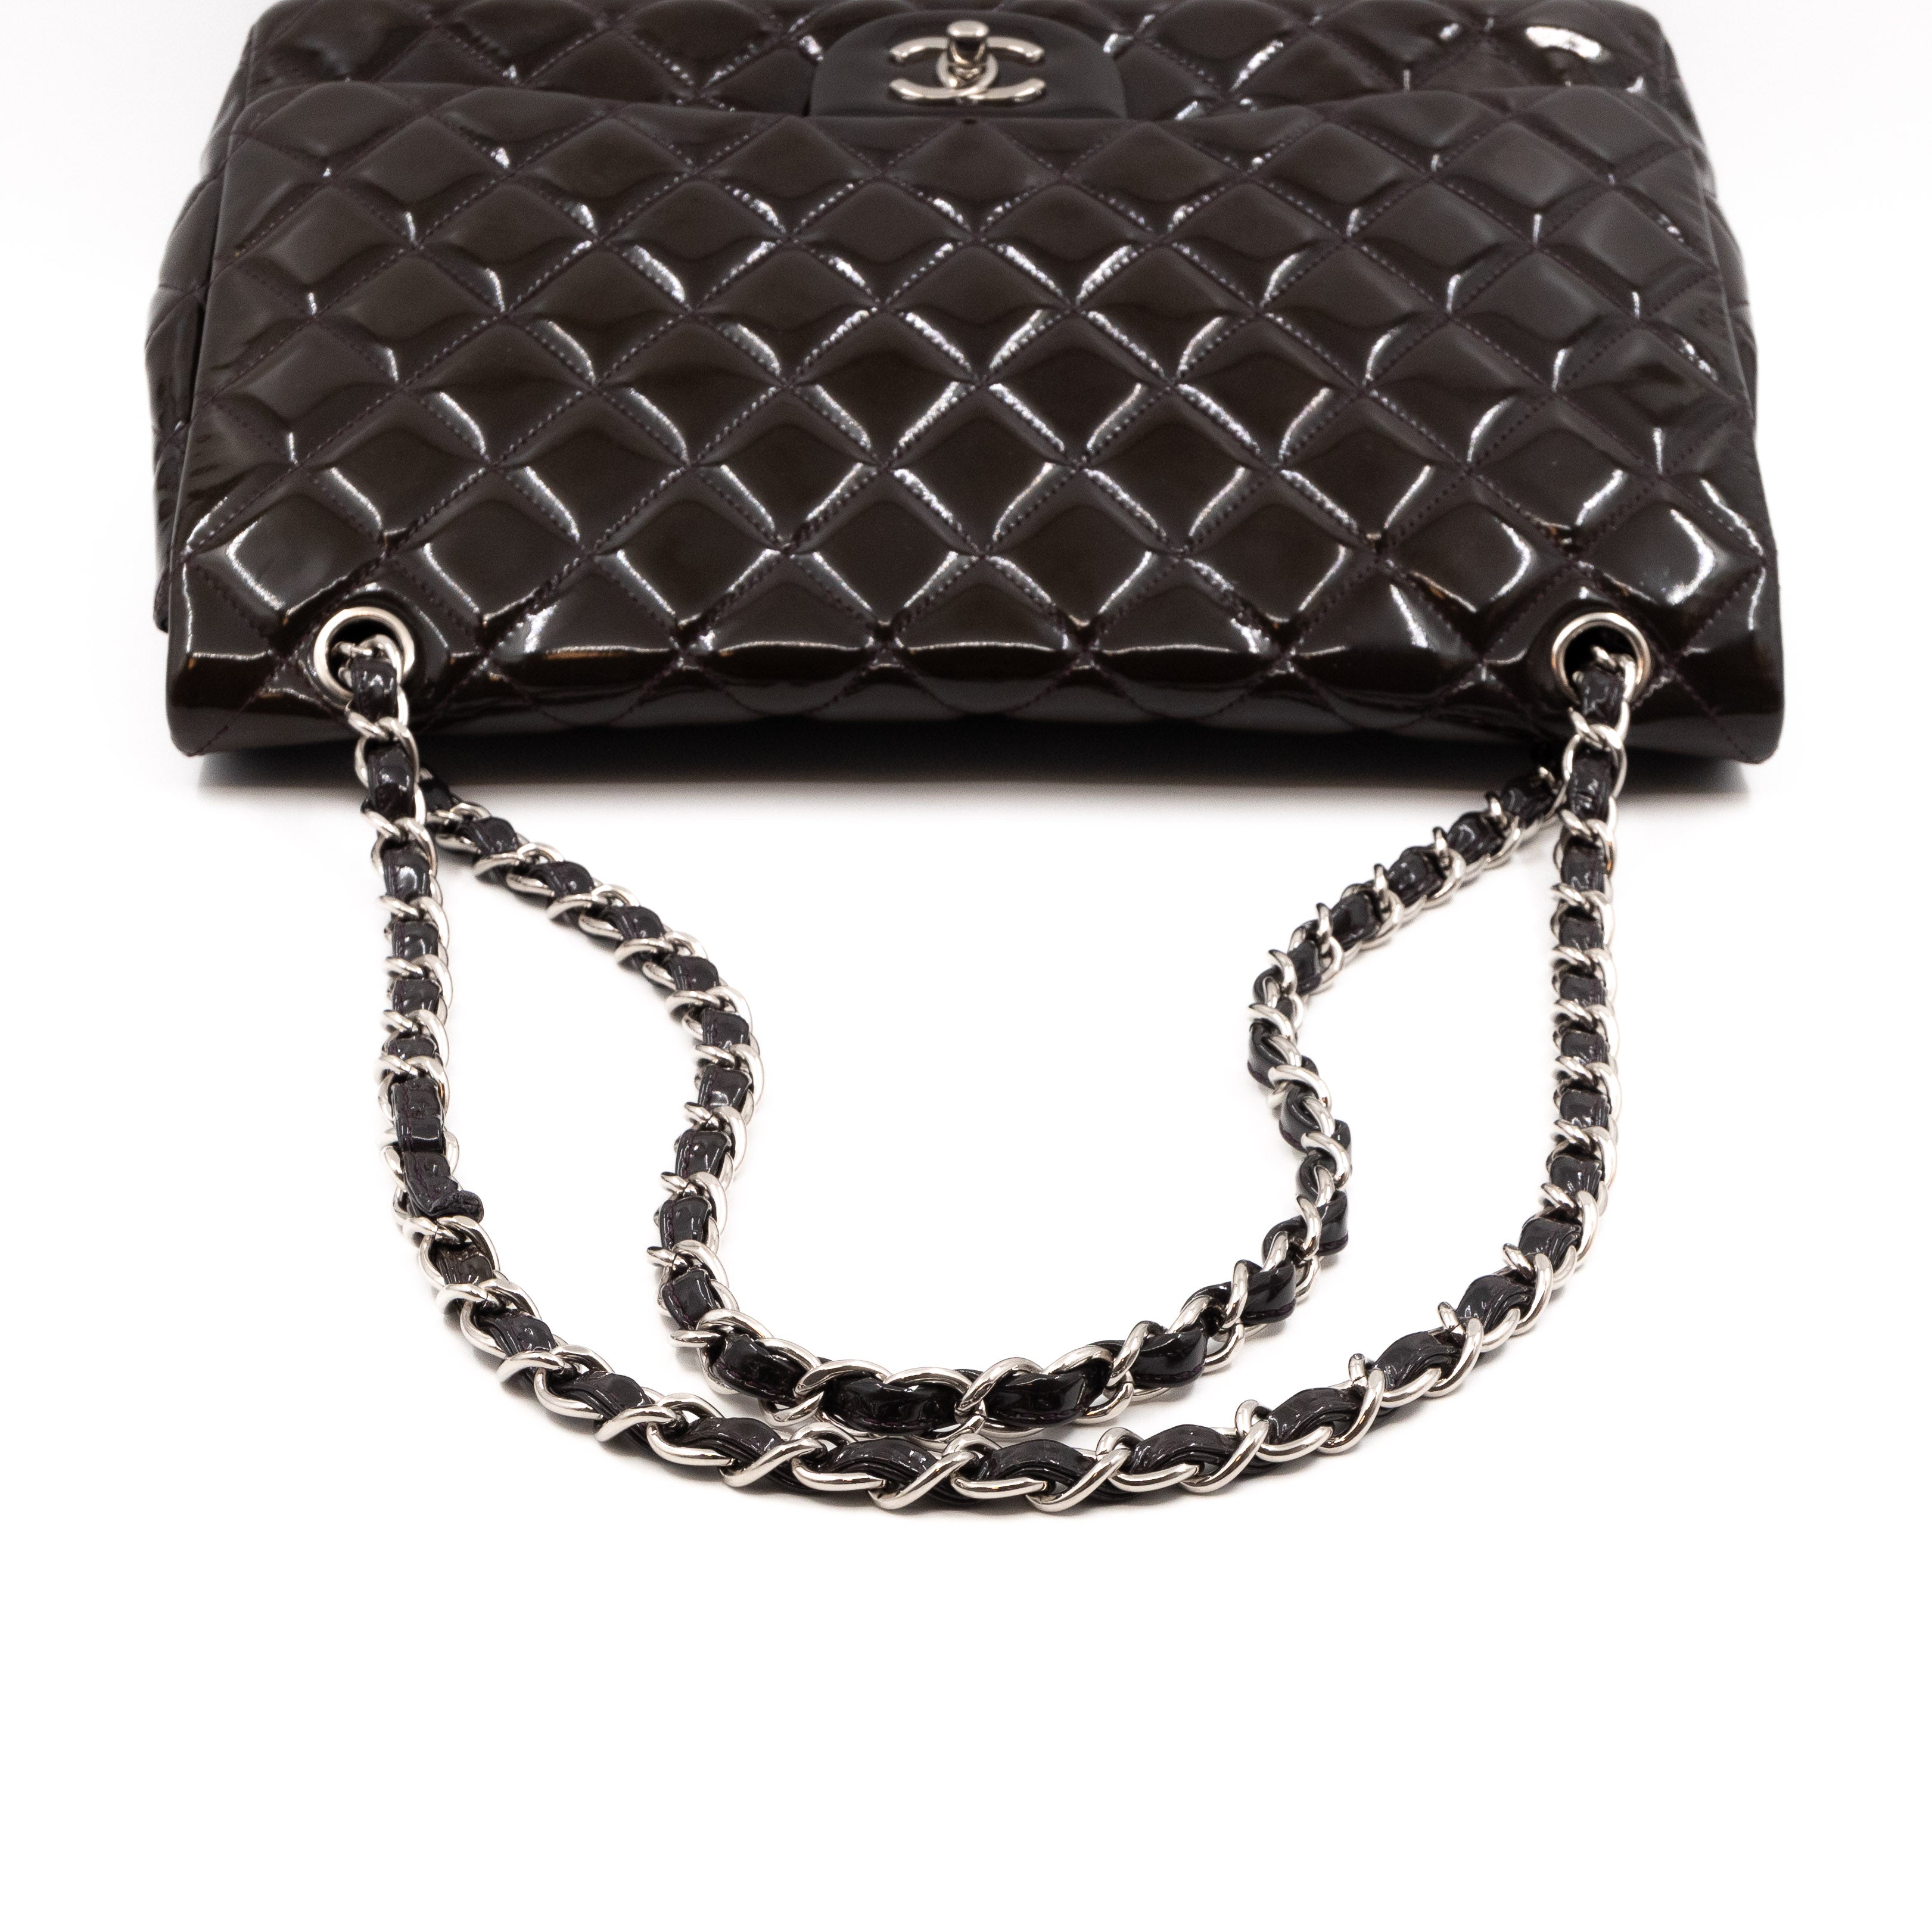 Chanel Classic Vintage Black Patent Leather Big CC 24K Gold Chain GST XL Bag   My Dreamz Closet